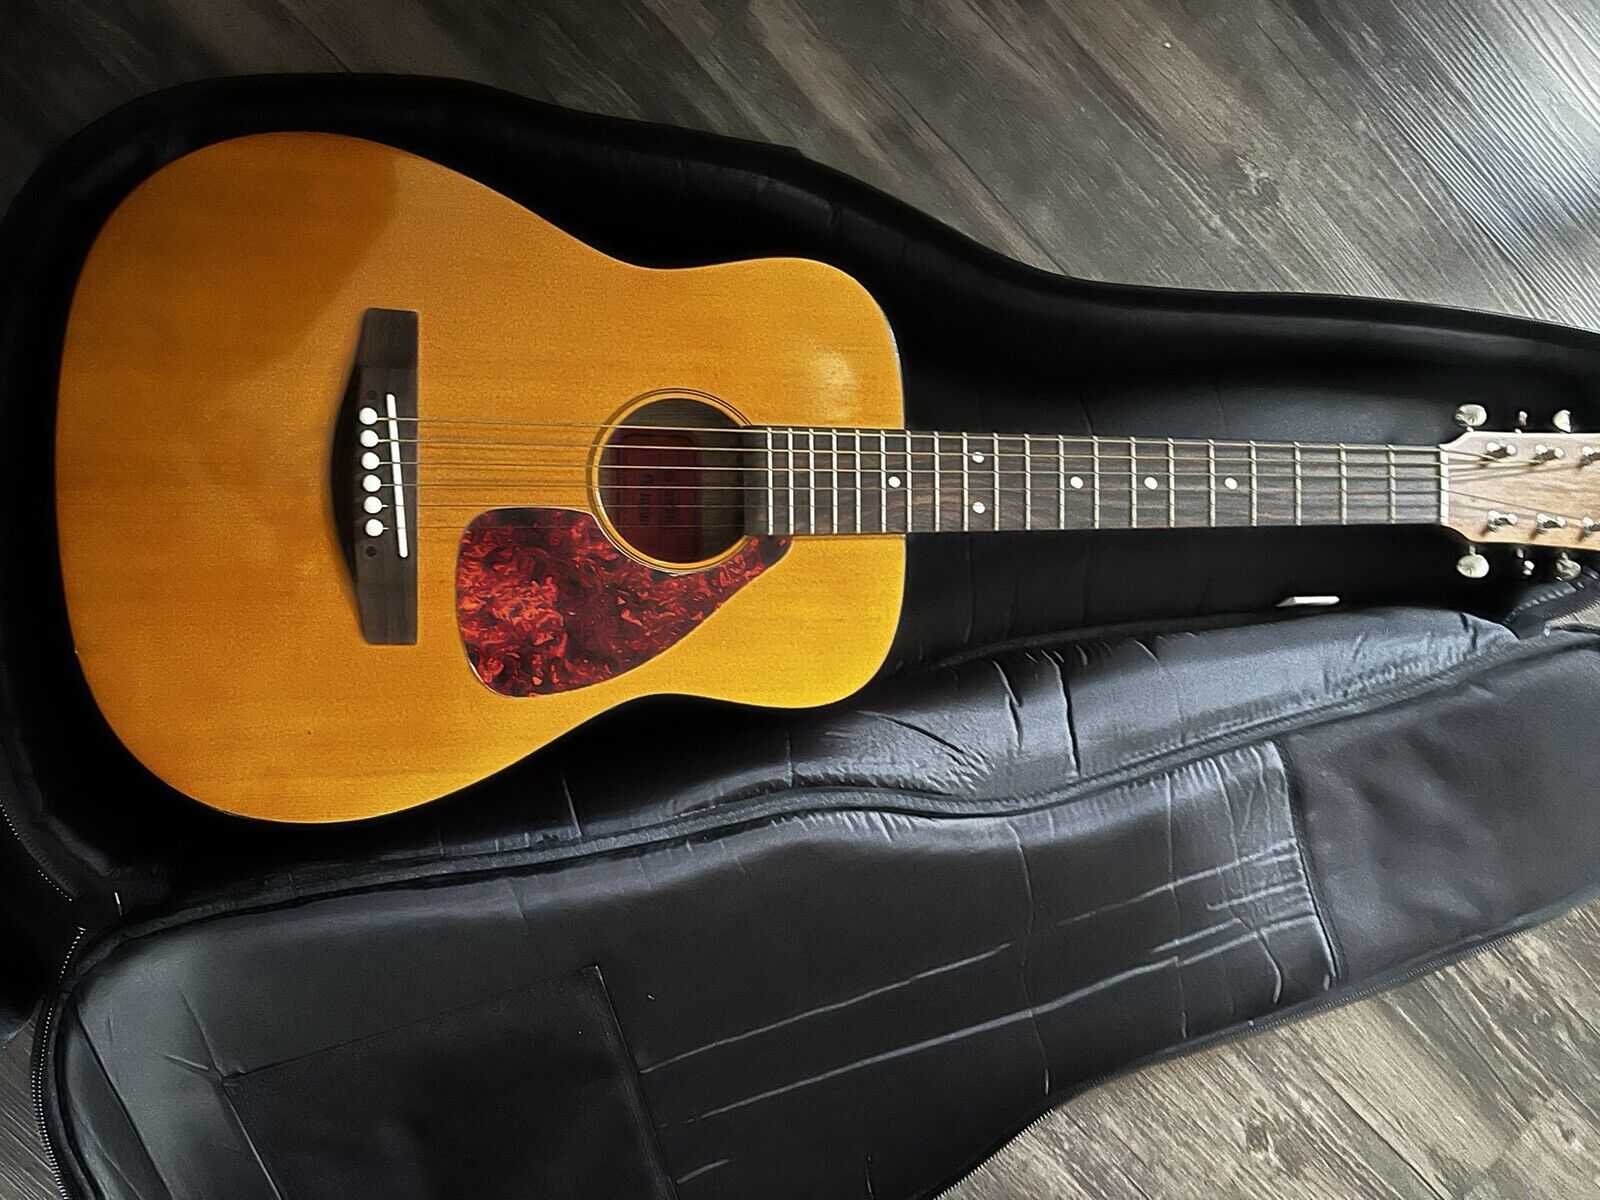 Yamaha F335 Acoustic Guitar - Natural